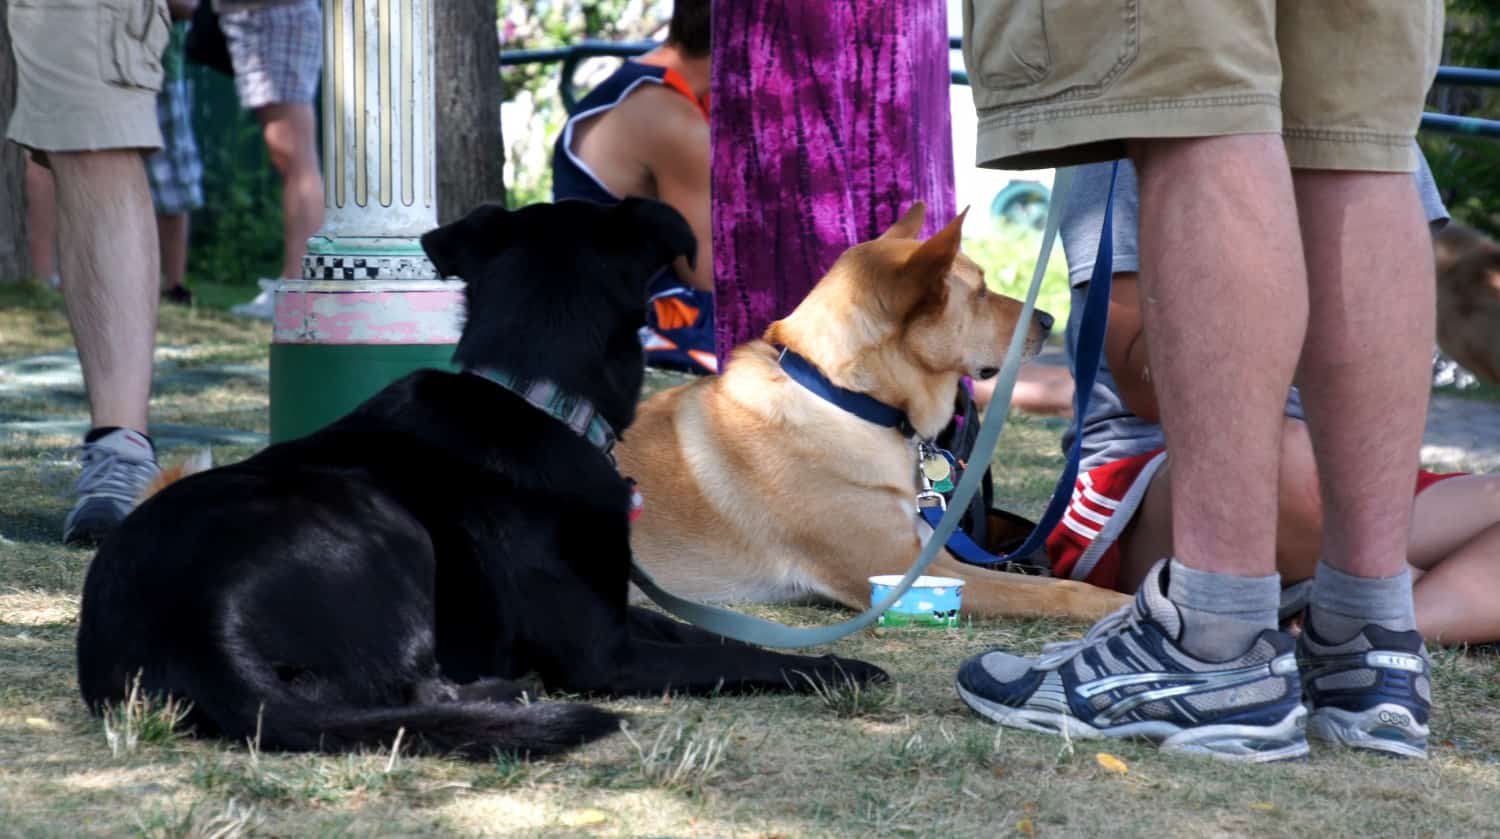 Dogs at Ben & Jerry's - Burlington, VT